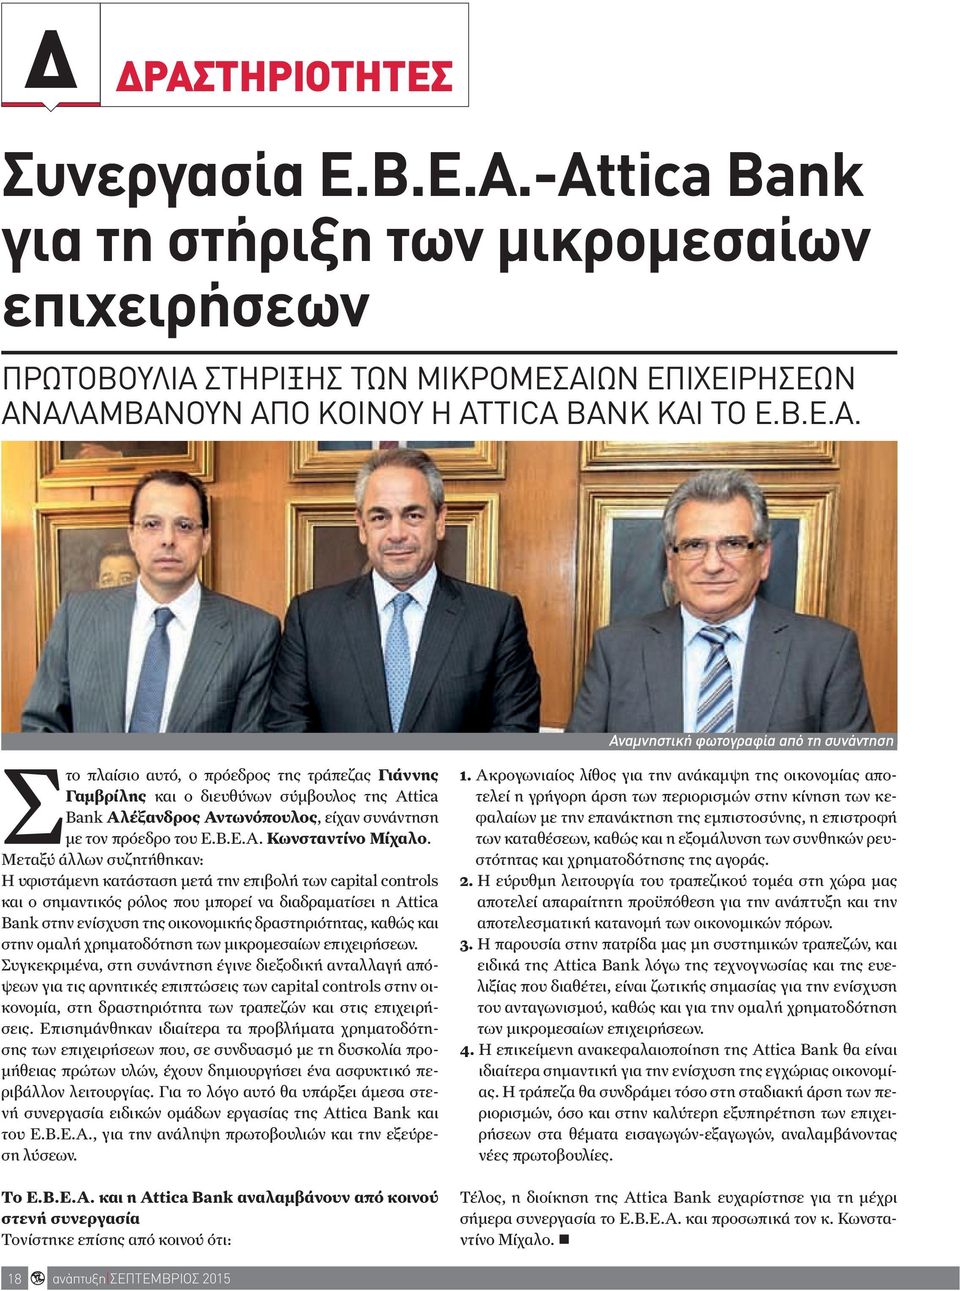 από τη συνάντηση Στο πλαίσιο αυτό, ο πρόεδρος της τράπεζας Γιάννης Γαμβρίλης και ο διευθύνων σύμβουλος της Attica Bank Αλέξανδρος Αντωνόπουλος, είχαν συνάντηση με τον πρόεδρο του Ε.Β.Ε.Α. Κωνσταντίνο Μίχαλο.